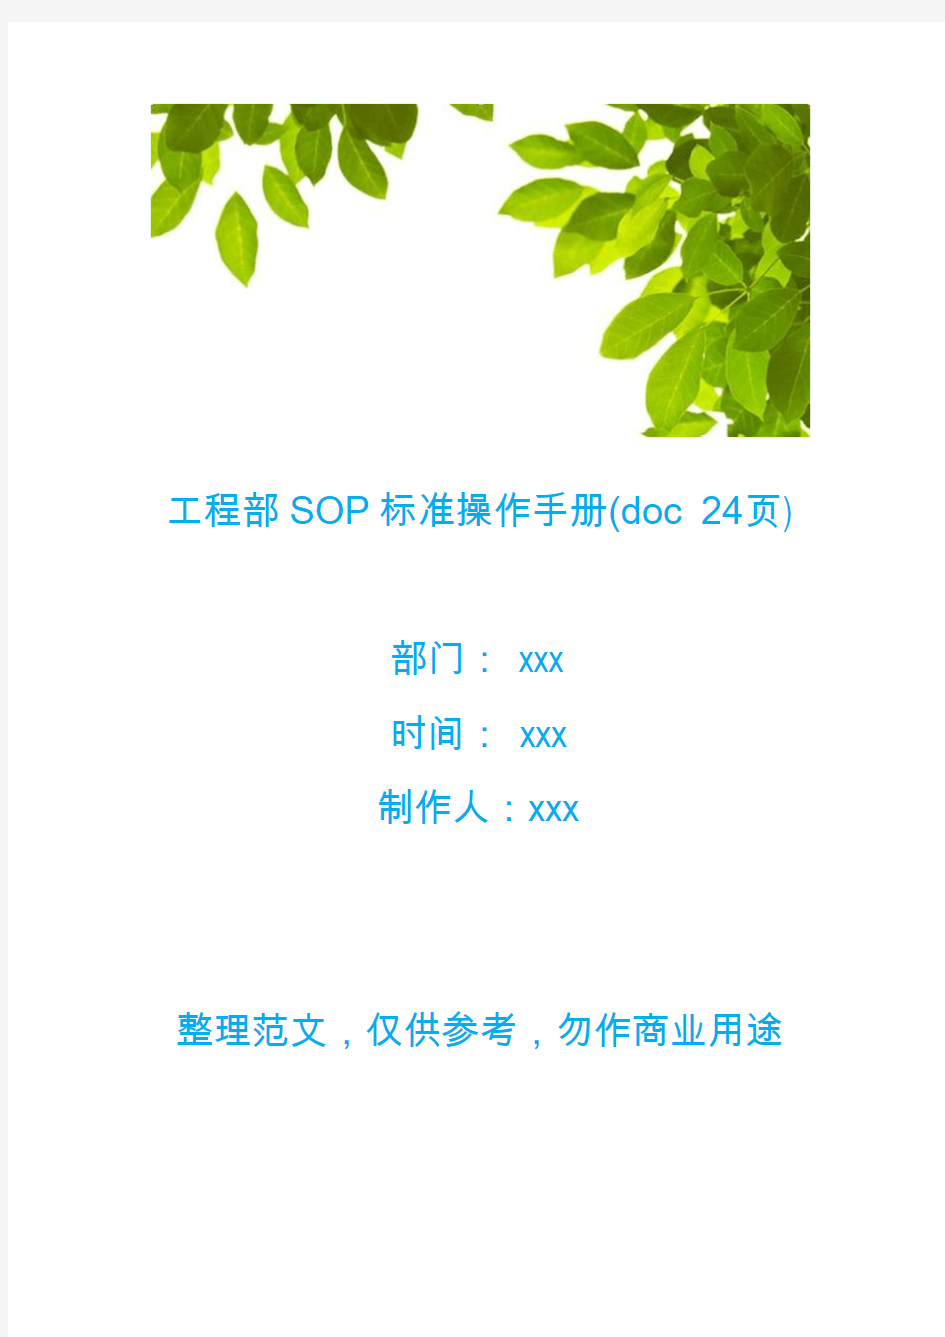 【工程文档】工程部SOP标准操作手册(doc 24页)